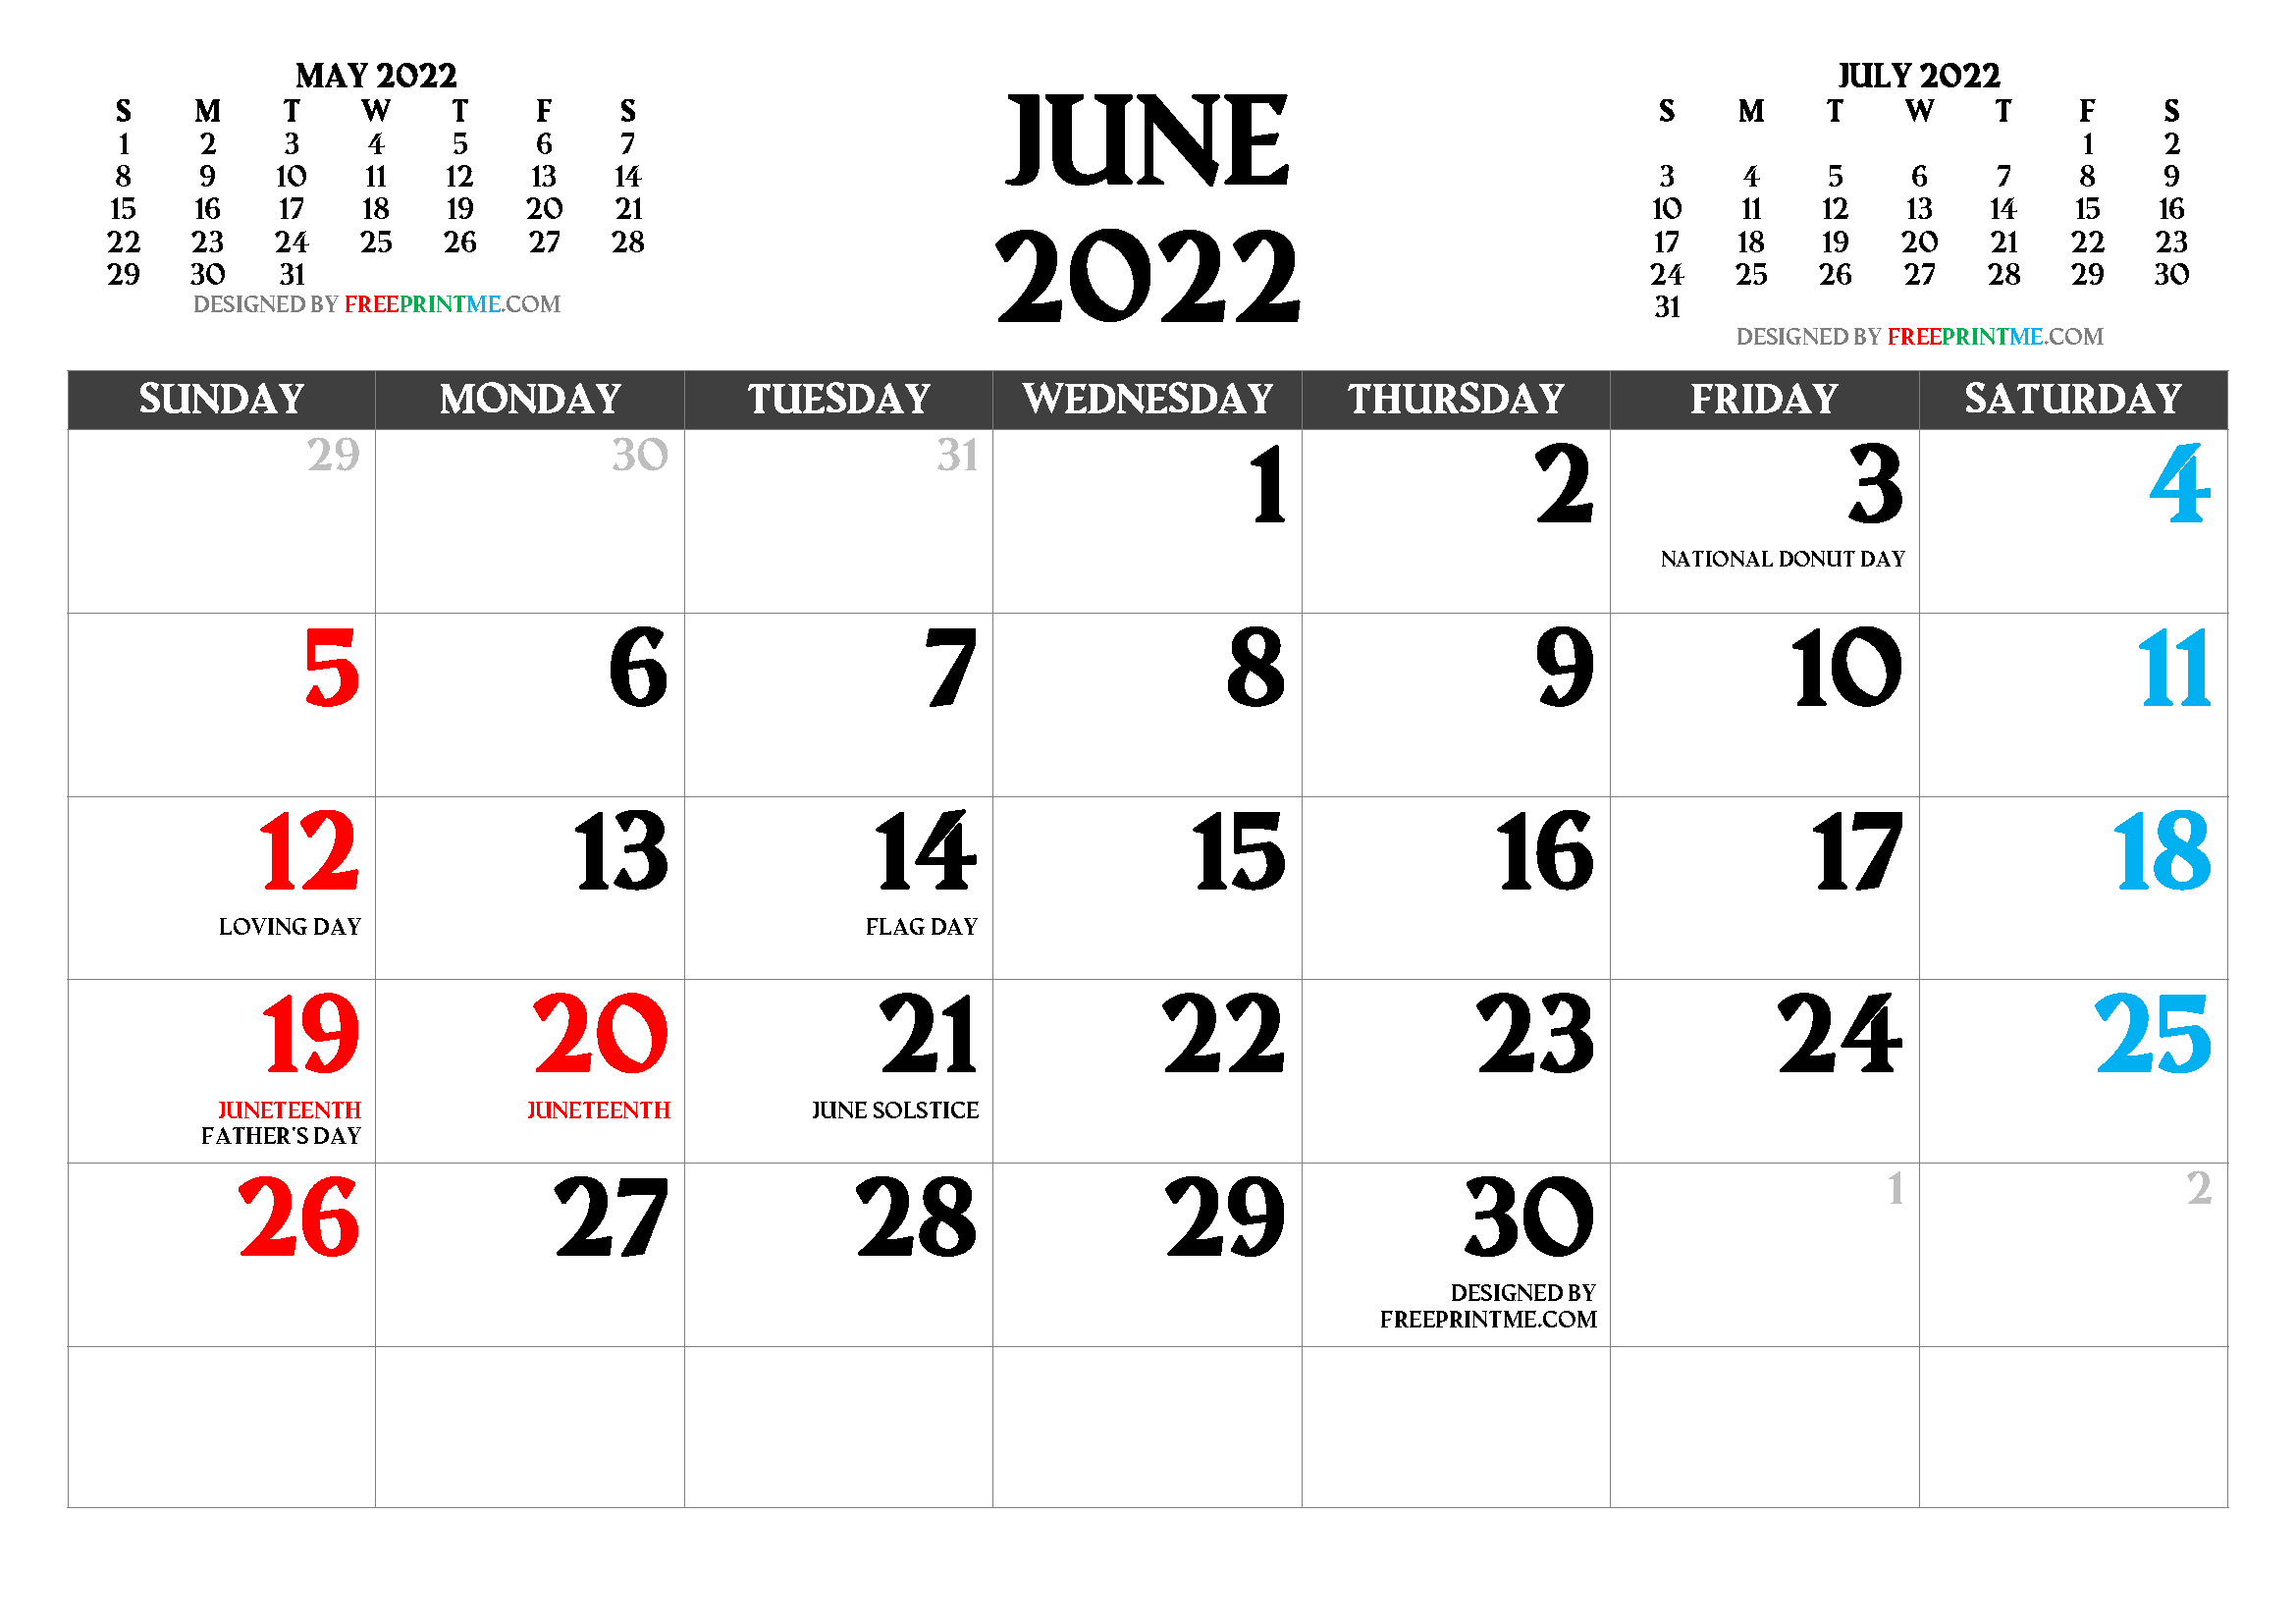 June 2022 Calendar Free Printable June 2022 Calendar Pdf And Image